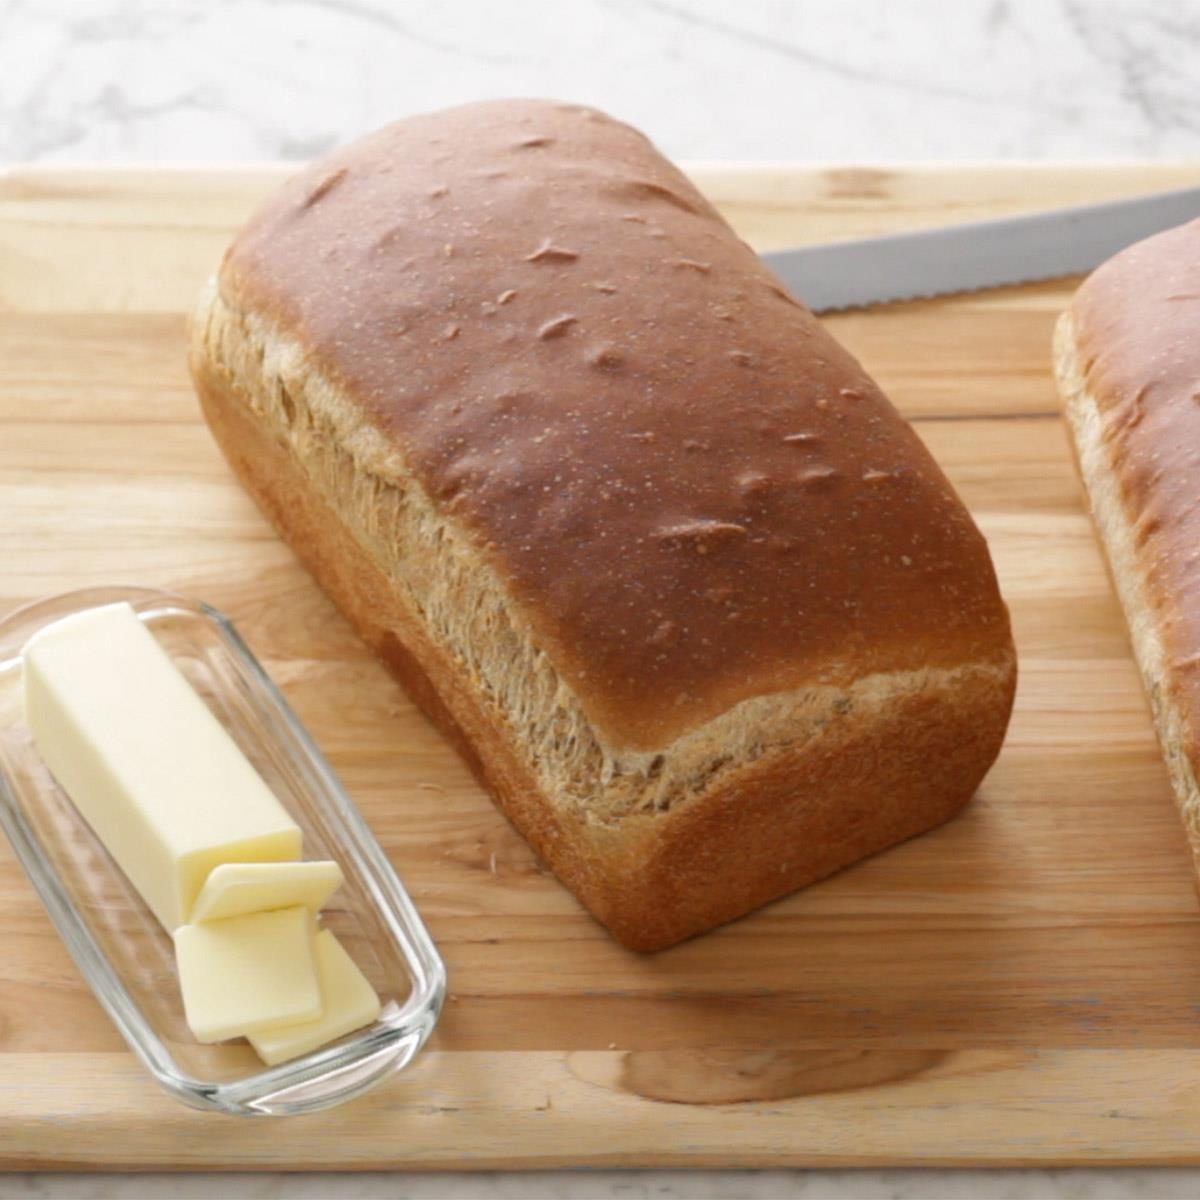 Whole Wheat Bread Recipe | Knead Bread Recipe, No Knead Bread, Artisan